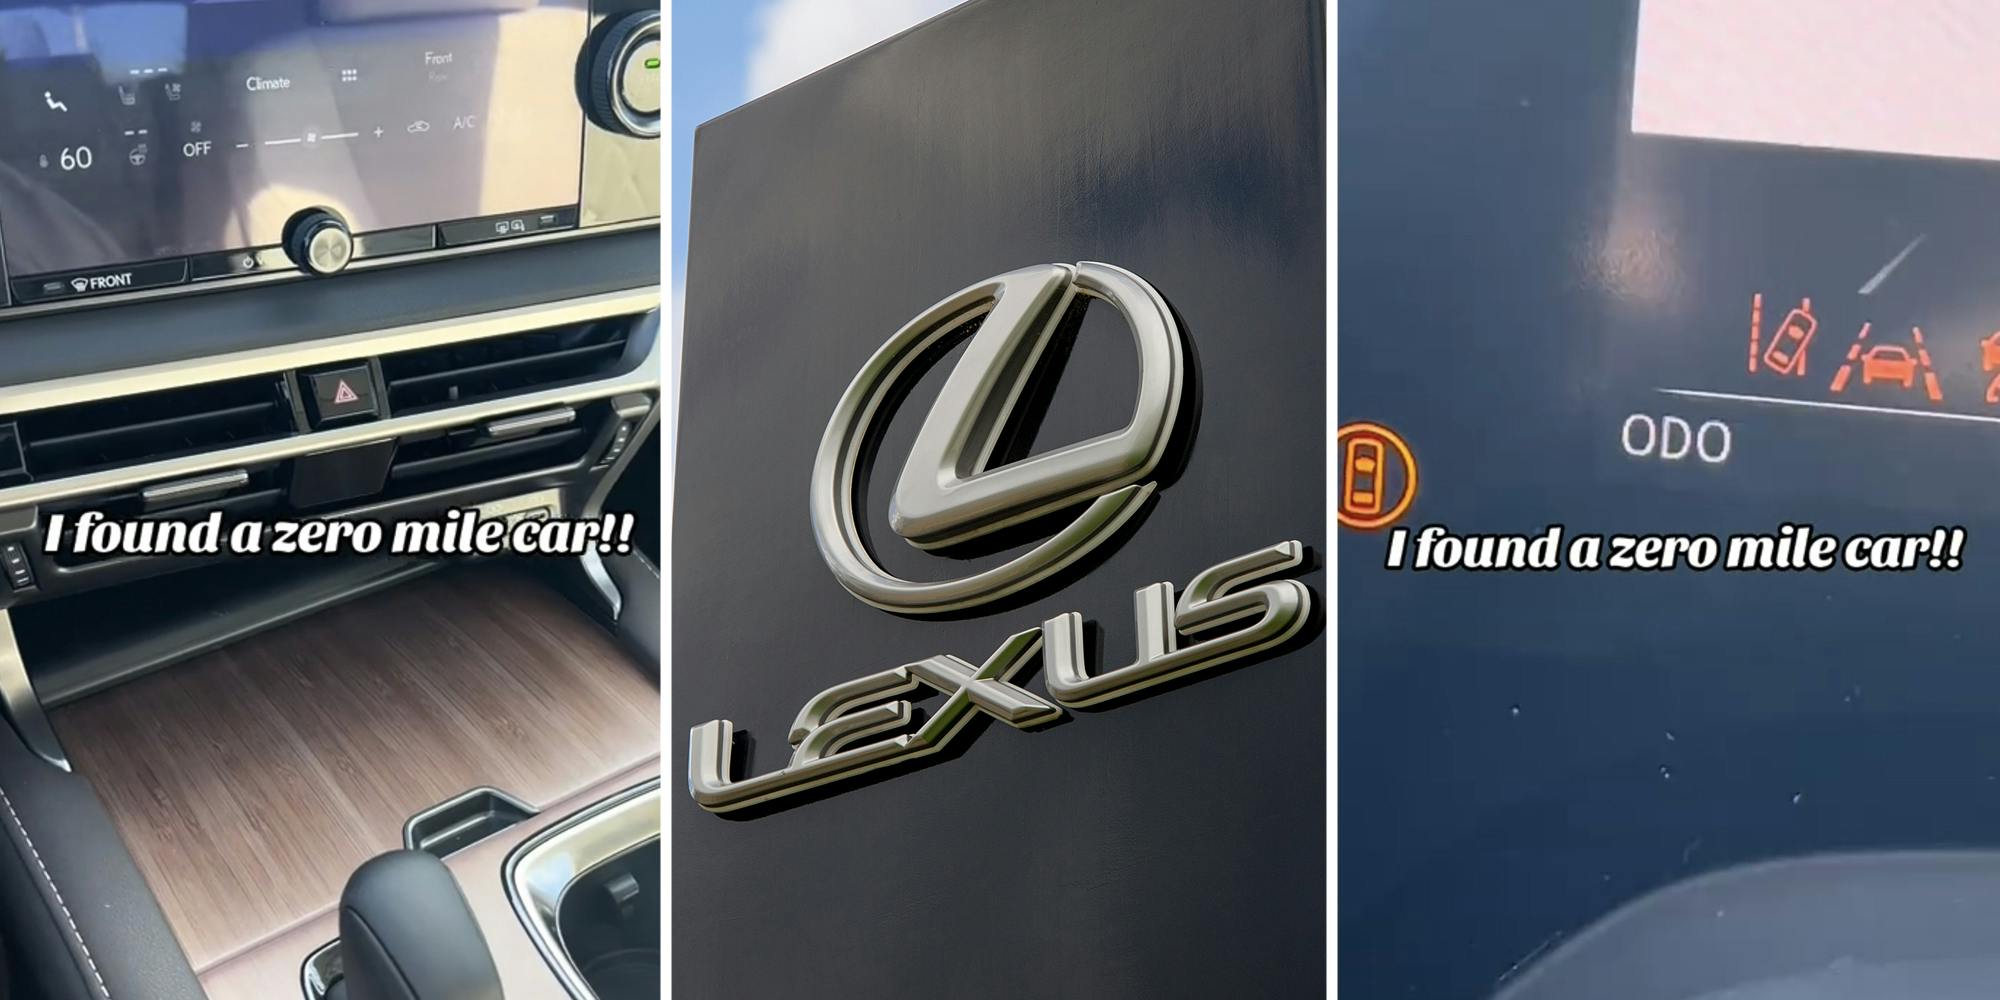 Interior car(l), Lexus logo(c), Odometer(r)